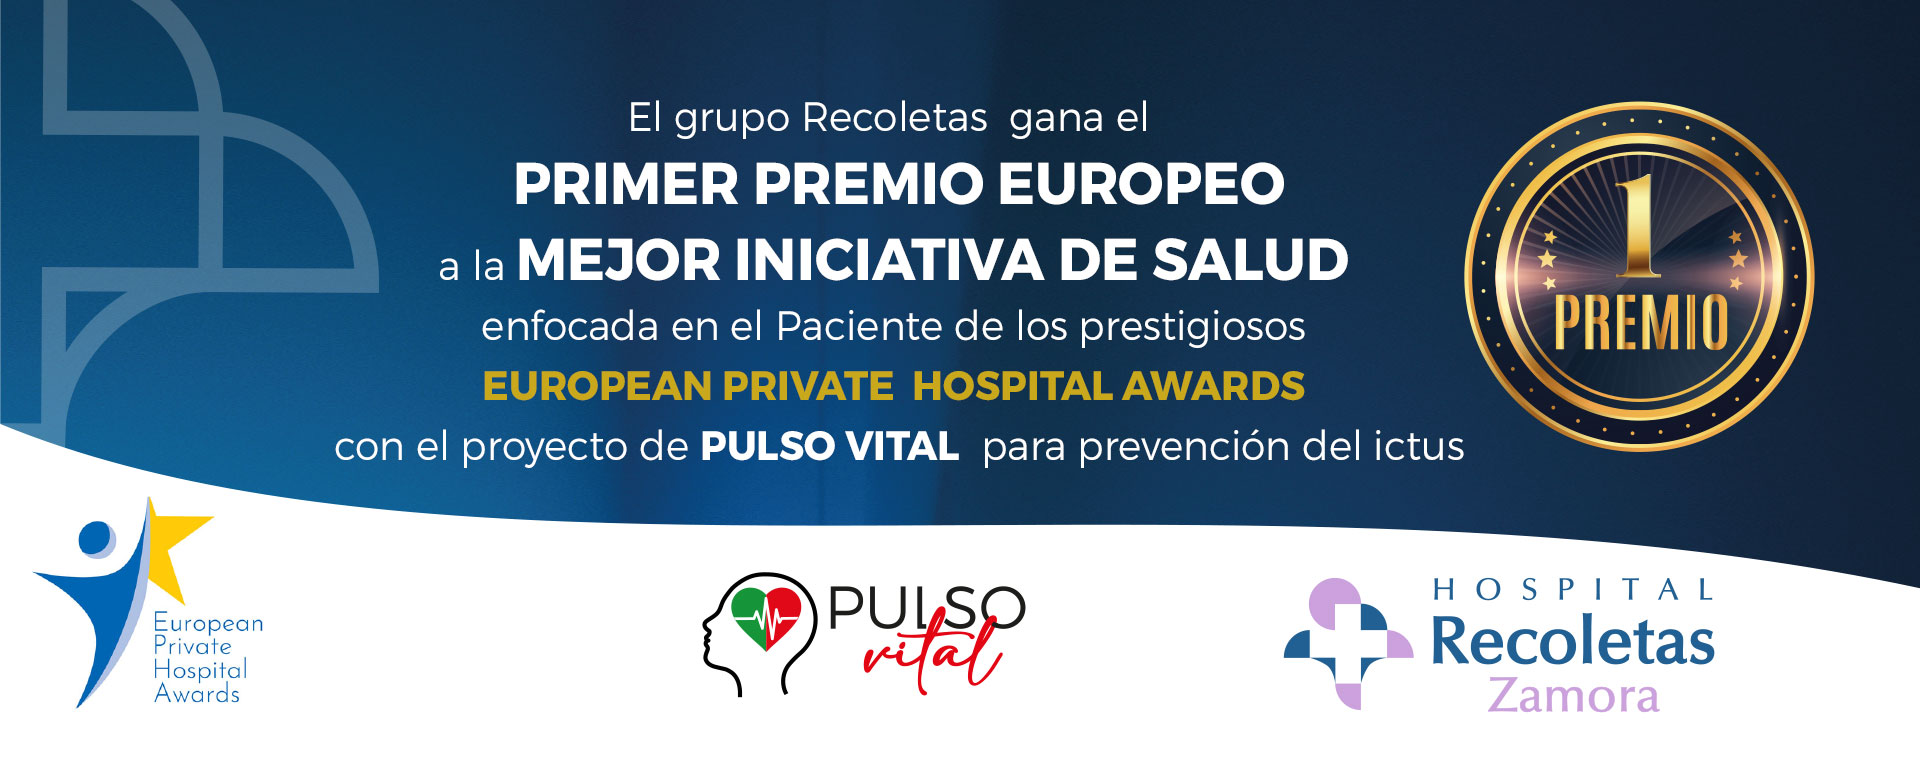 Primer Premio Europeo a la Mejor Iniciativa de Salud enfocada en el Paciente de los prestigiosos European Private Hospital Awards, con el proyecto Pulso Vital para la prevención del ictus.